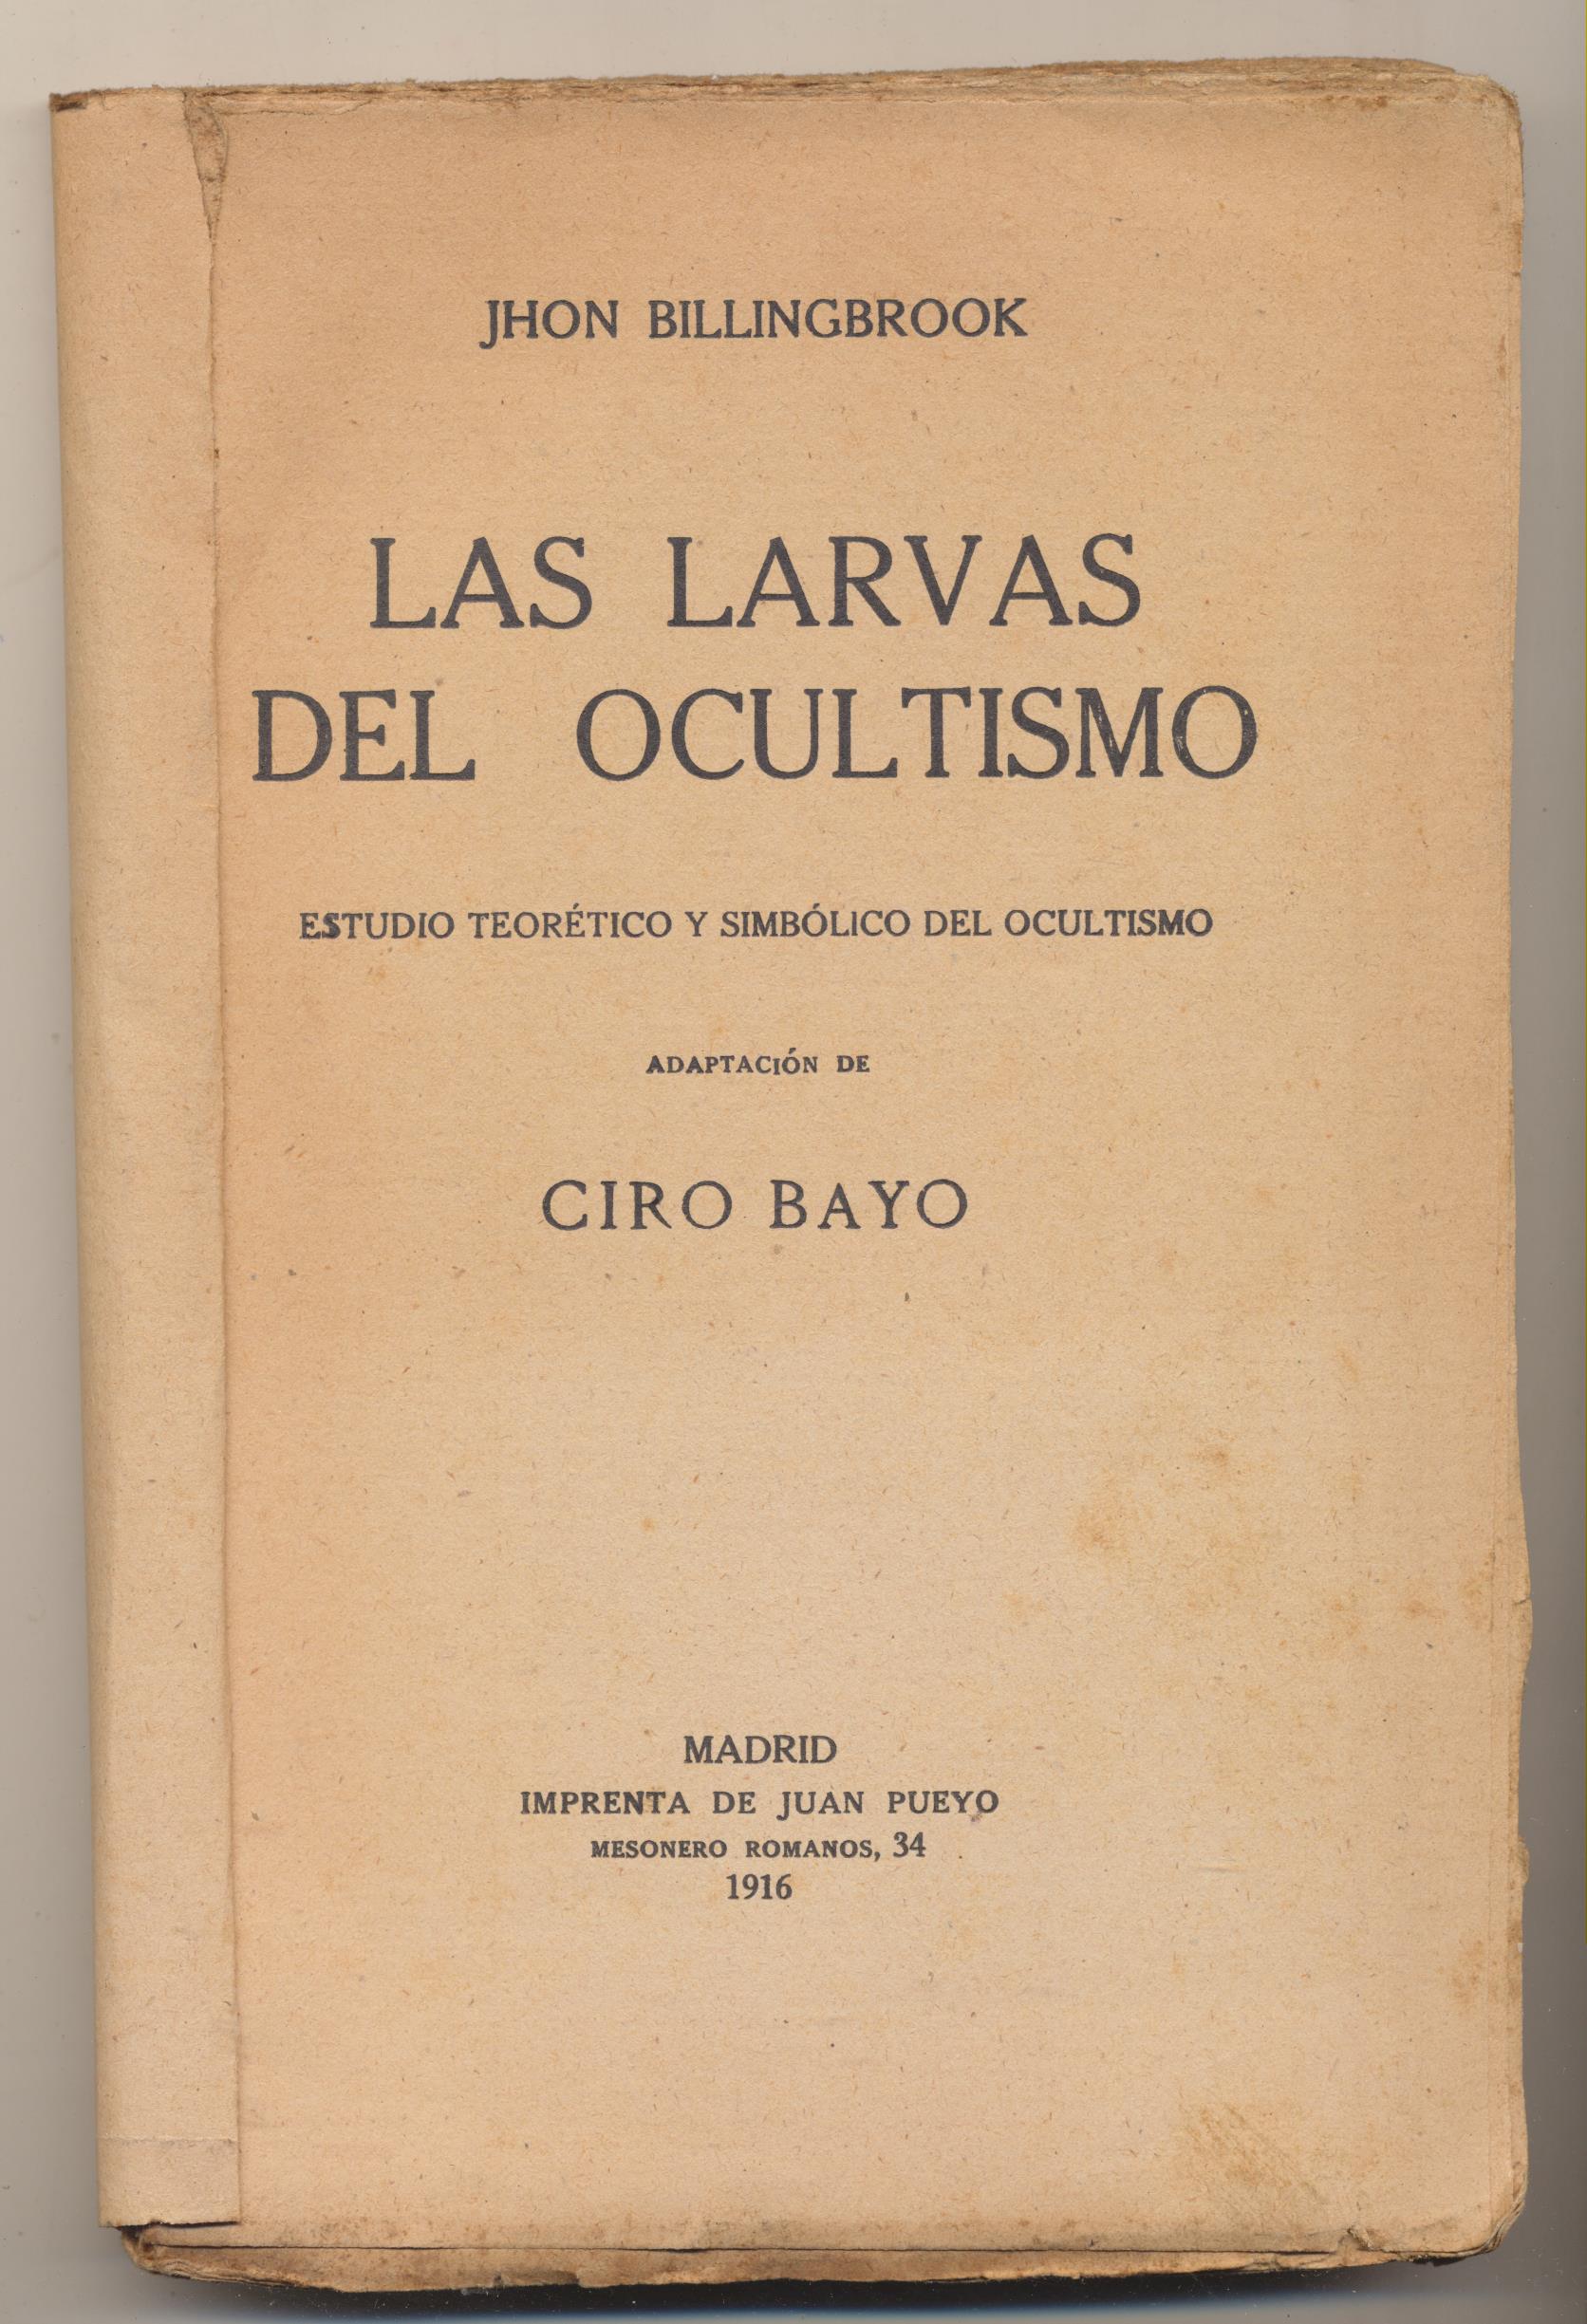 John Billingbrook. Las larvas del ocultismo. Adaptación de Ciro Bayo. Madrid 1916